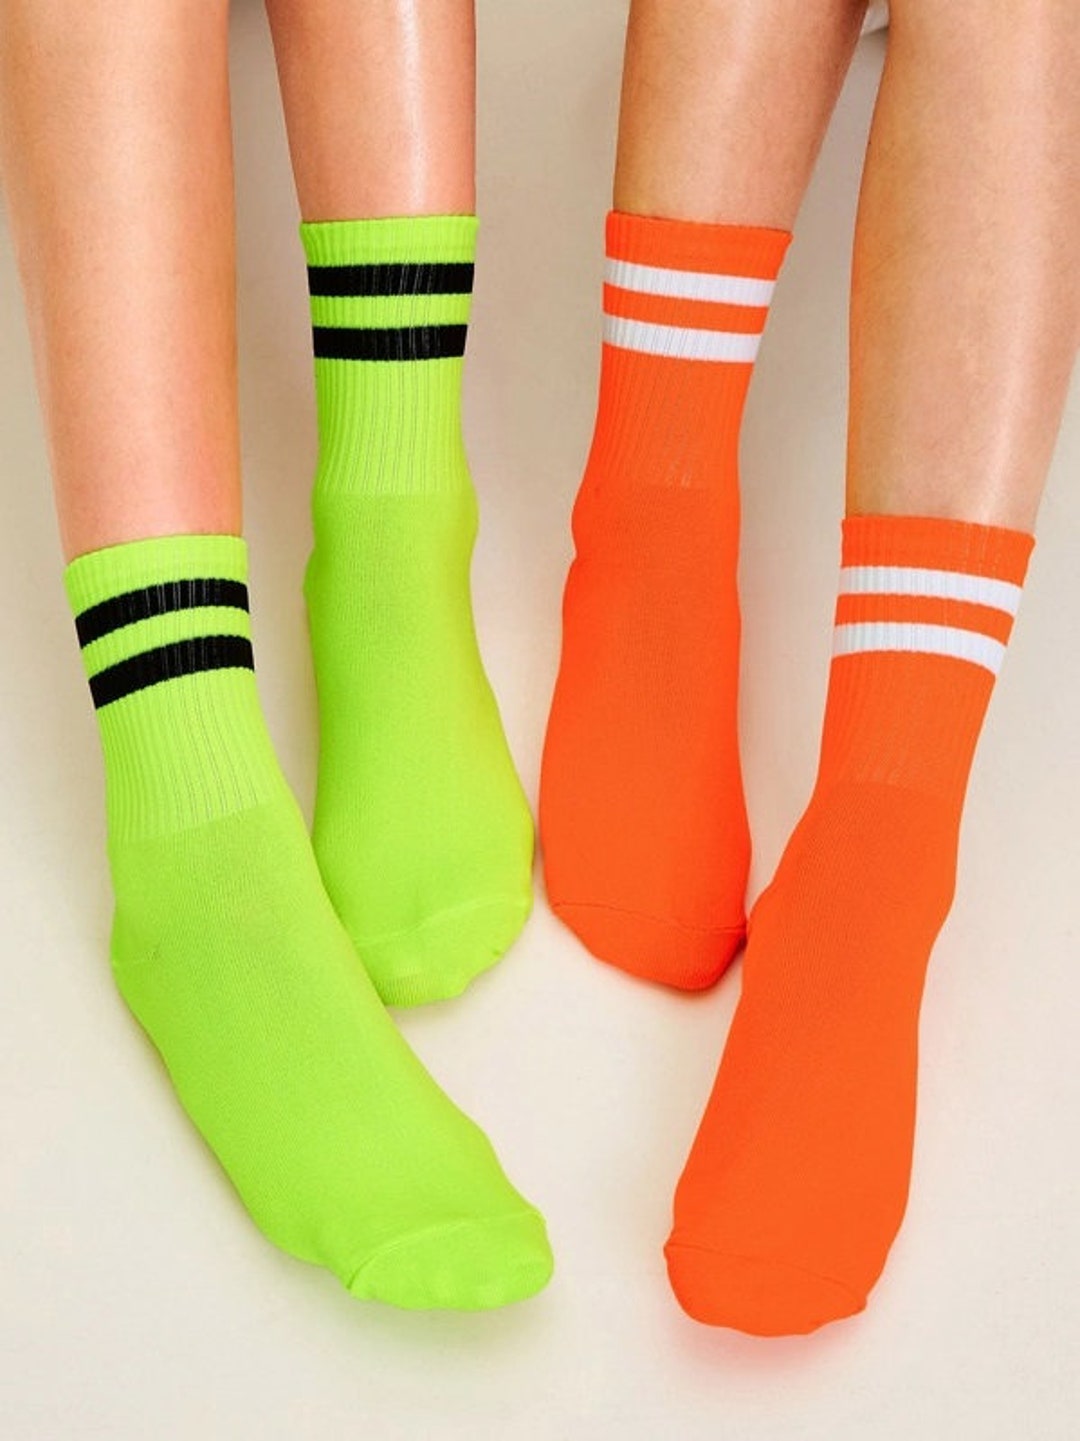 Neon Socks Crew Cotton Socks for Women and Men Fluorescent - Etsy